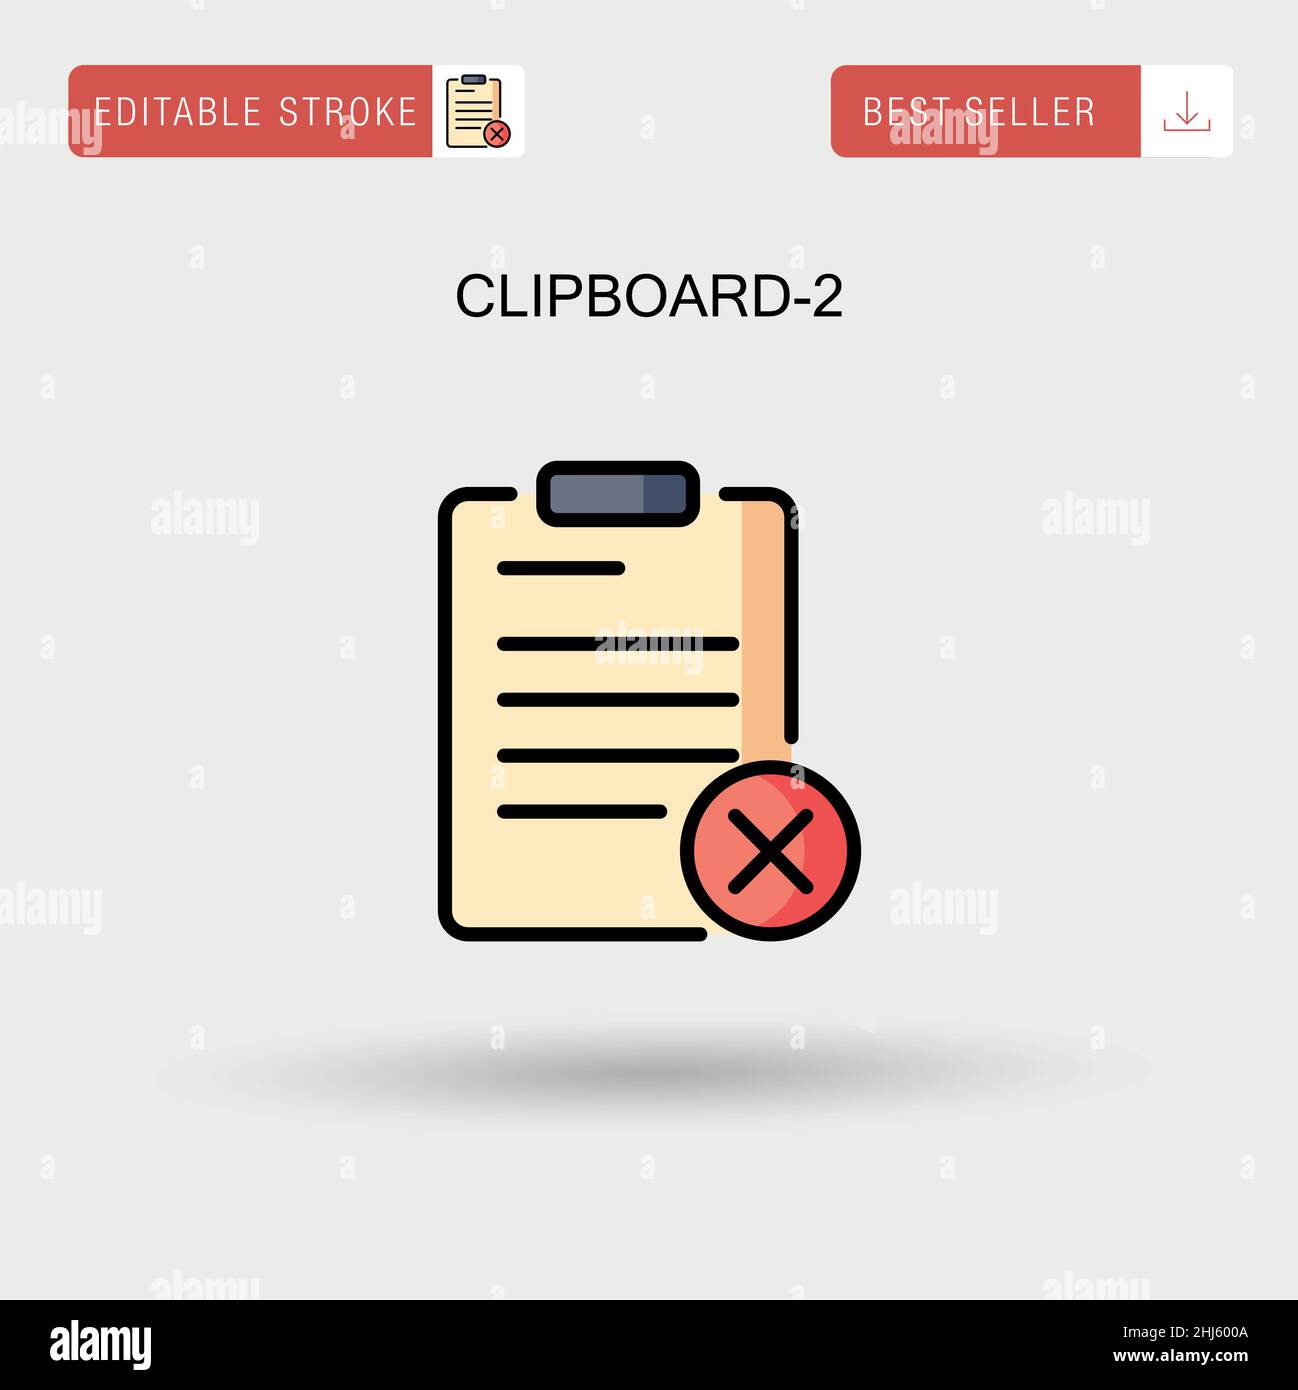 Clipboard-2 Simple vector icon. Stock Vector